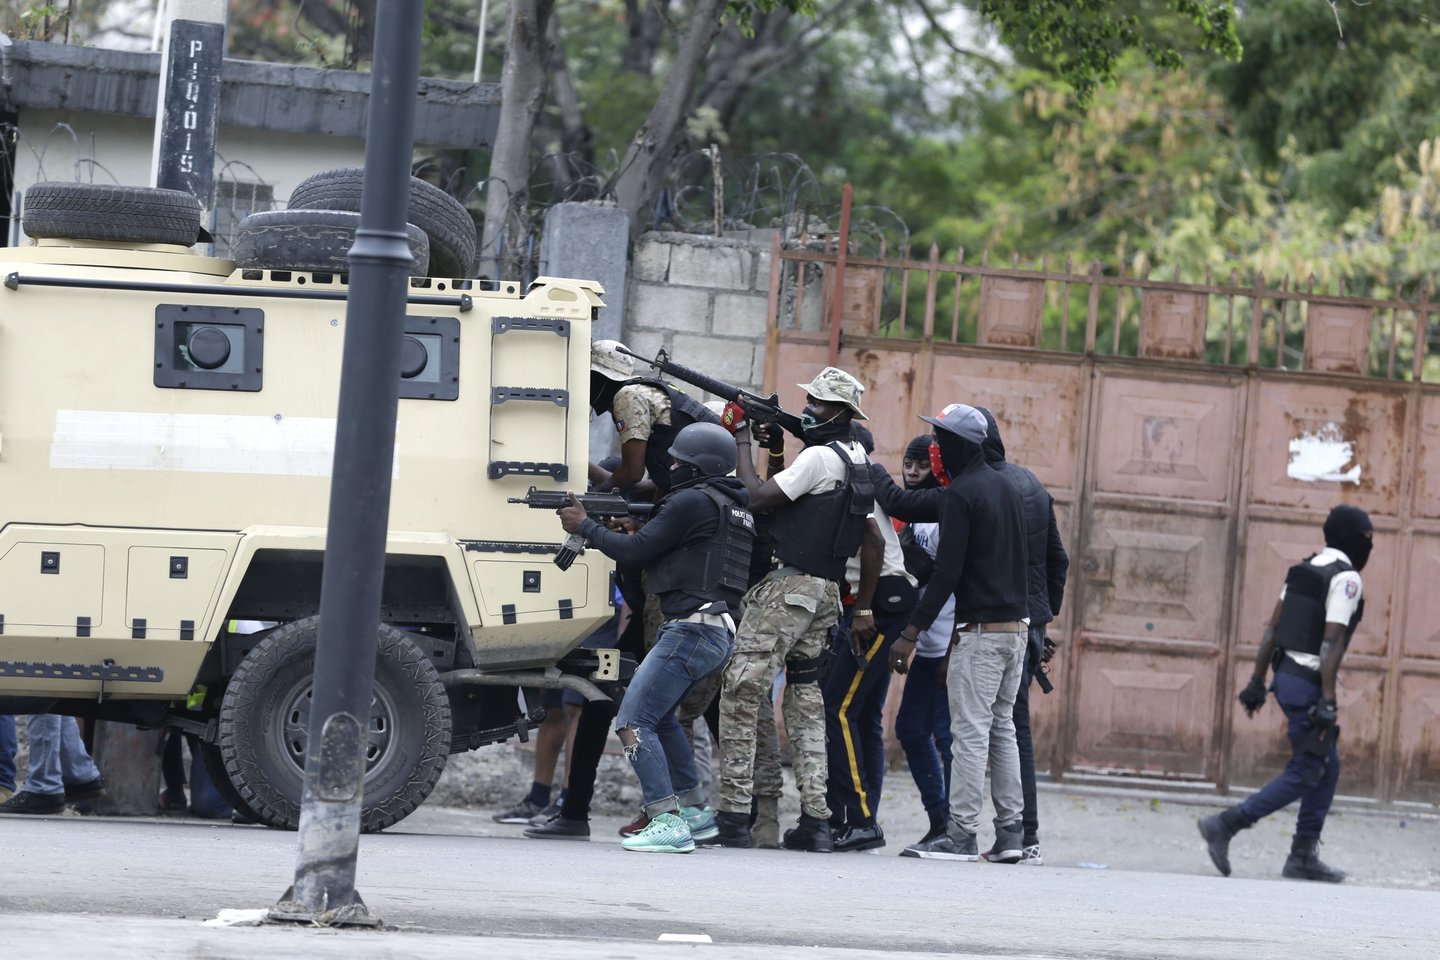  Haičio sostinėje policijai atakavus kariuomenės būstinę, miestas uždarytas.<br> AP/Scanpix nuotr.